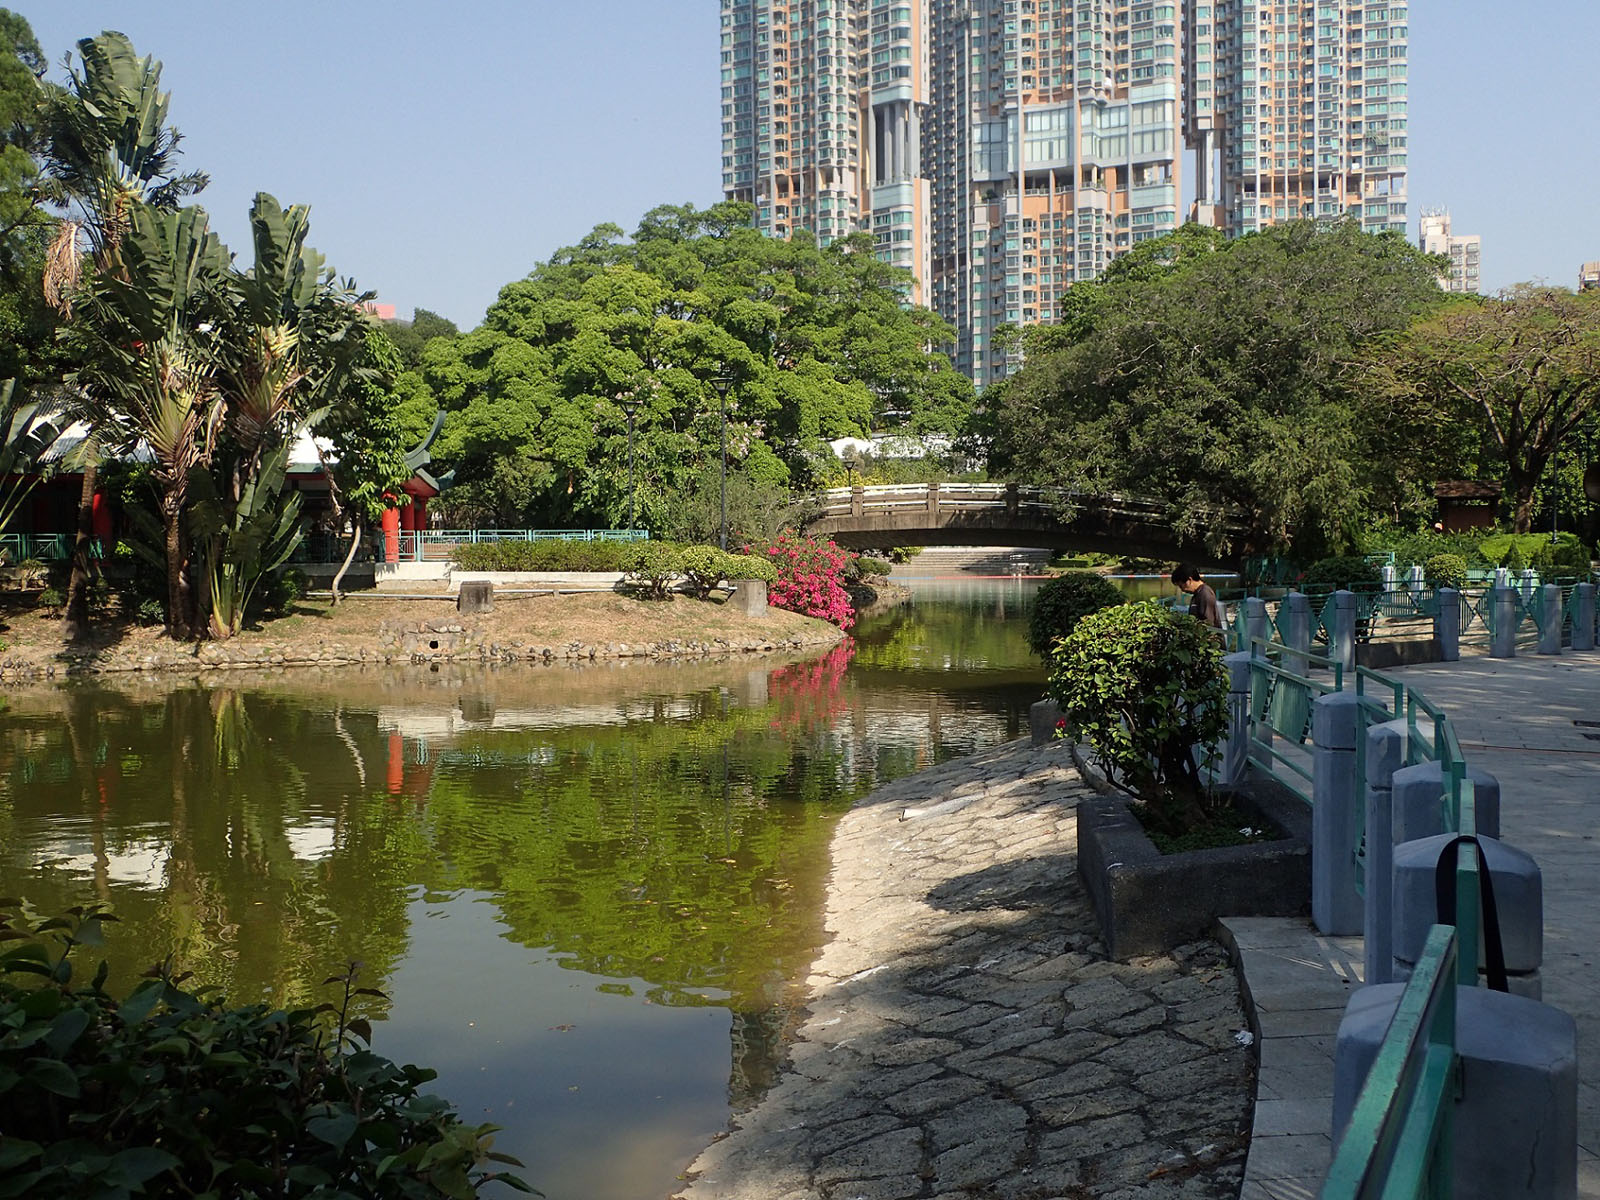 Photo 2: Tuen Mun Park